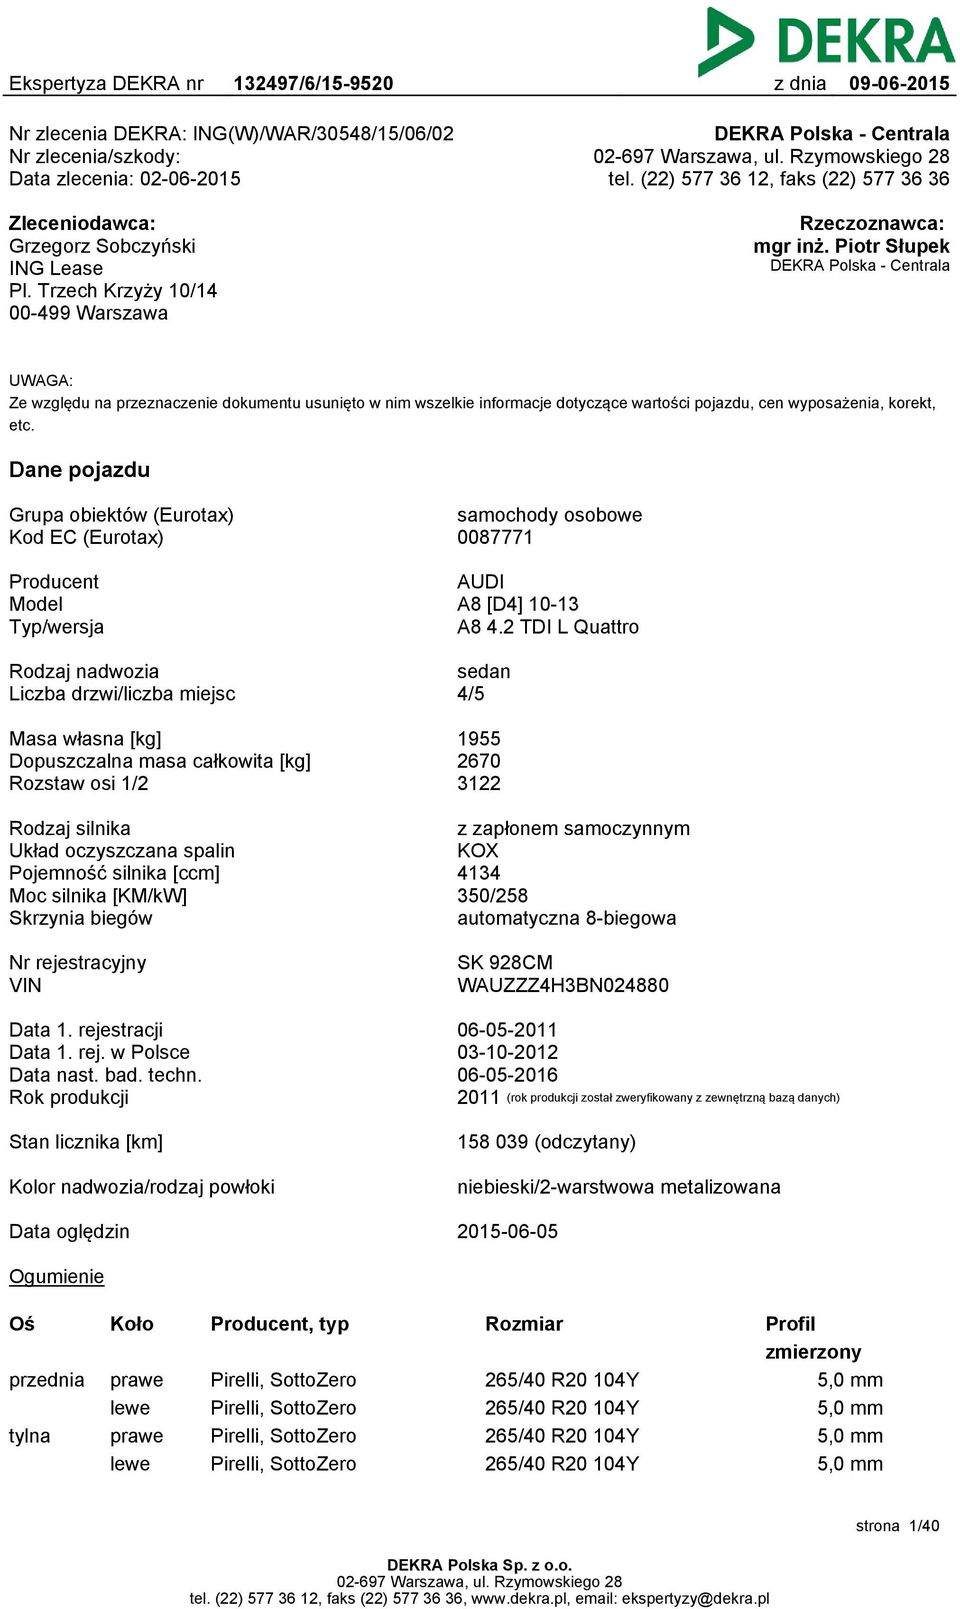 Piotr Słupek DEKRA Polska - Centrala UWAGA: Ze względu na przeznaczenie dokumentu usunięto w nim wszelkie informacje dotyczące wartości pojazdu, cen wyposażenia, korekt, etc.